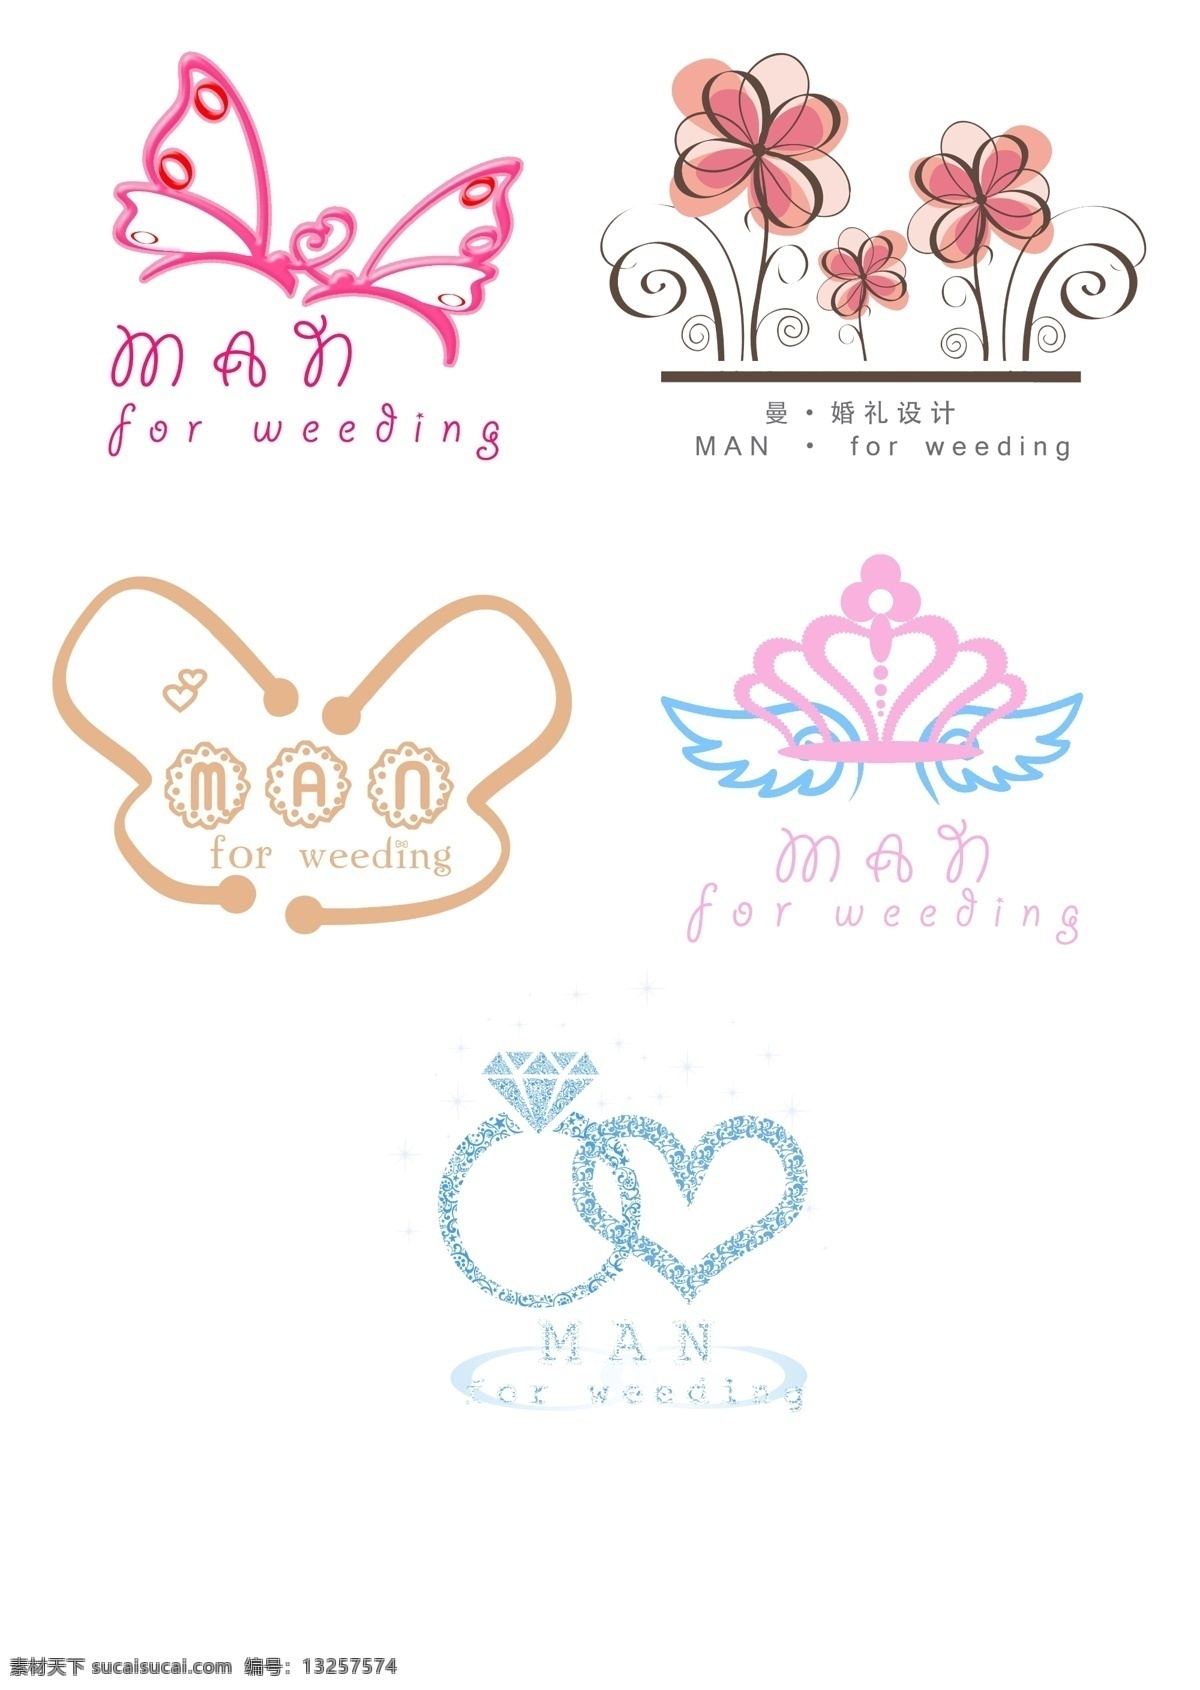 婚庆 珠宝 公司 品牌 logo 装饰 图 图标 翅膀 皇冠 花朵 蝴蝶 爱情 婚礼 浪漫 钻石 爱心 爱意 幸福 美好 白色